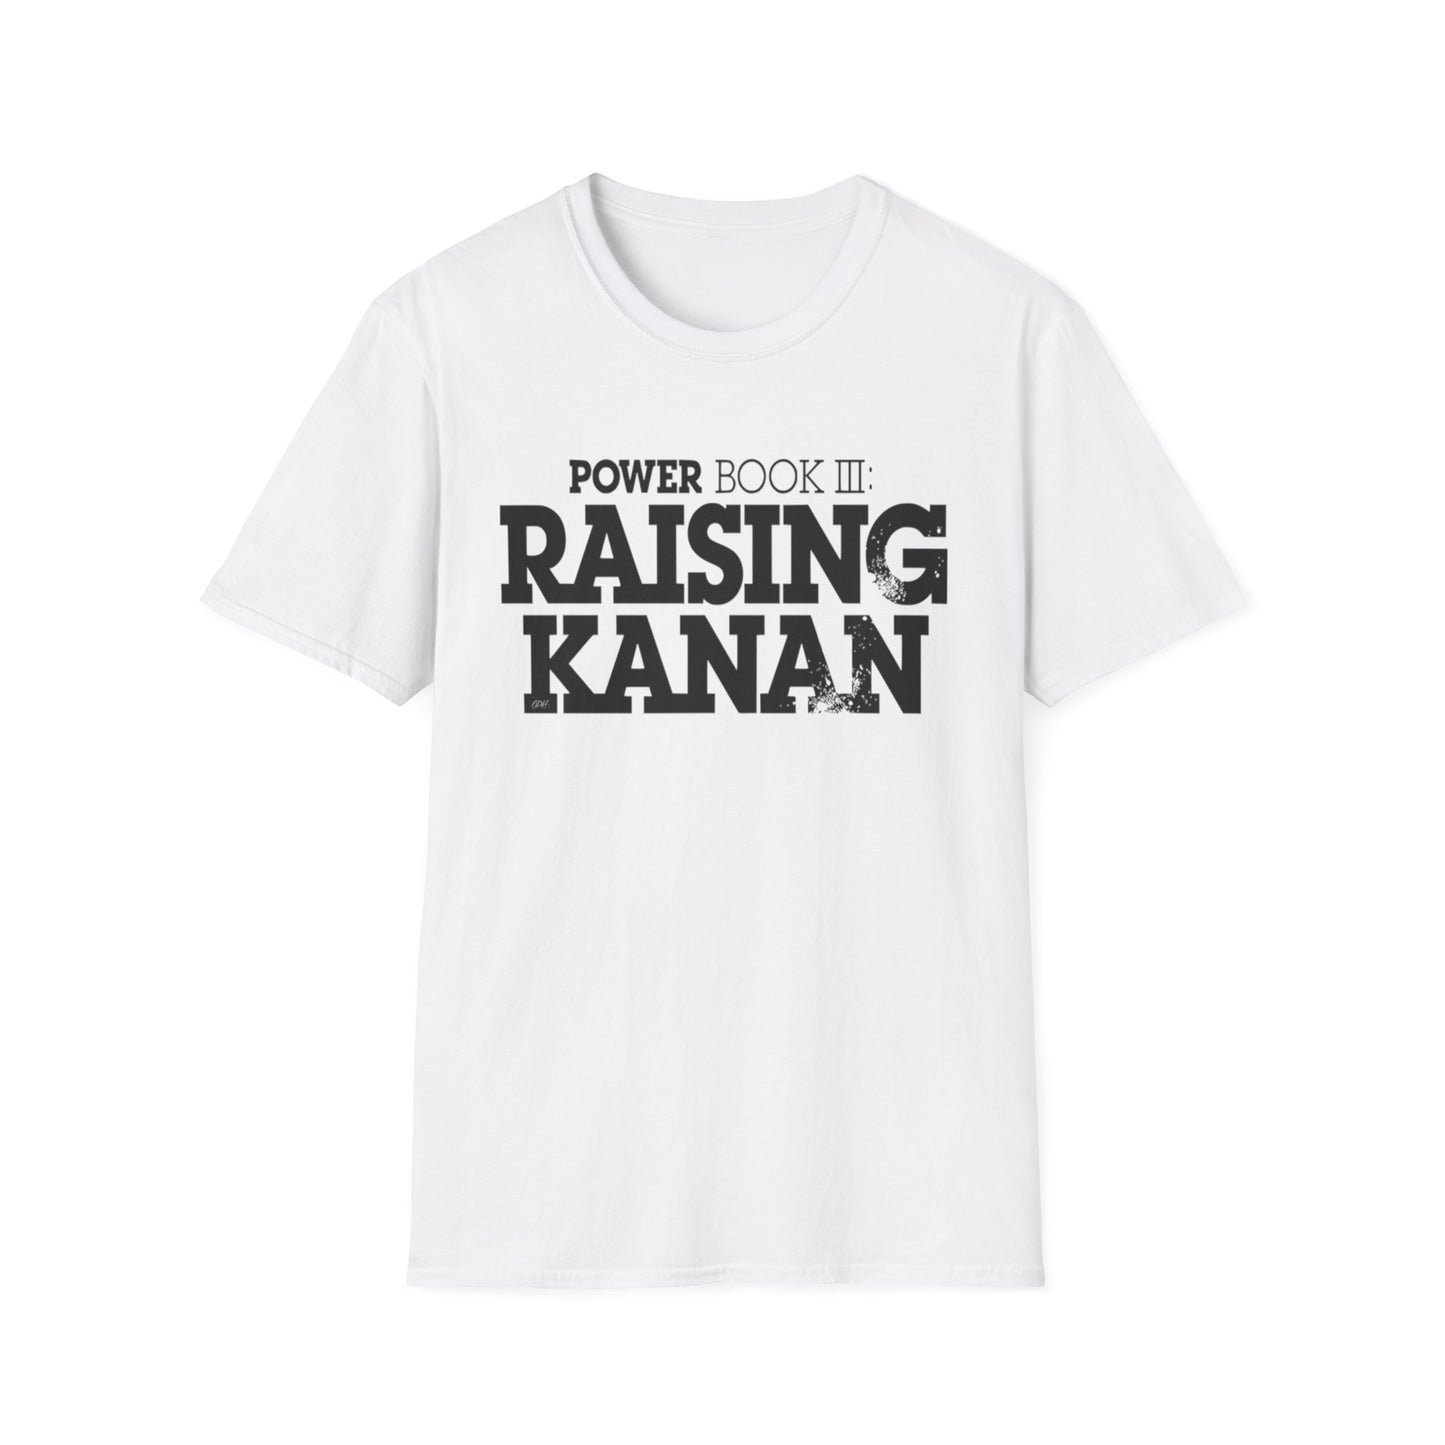 Raising Kanan Tee Unisex Softstyle T-Shirt